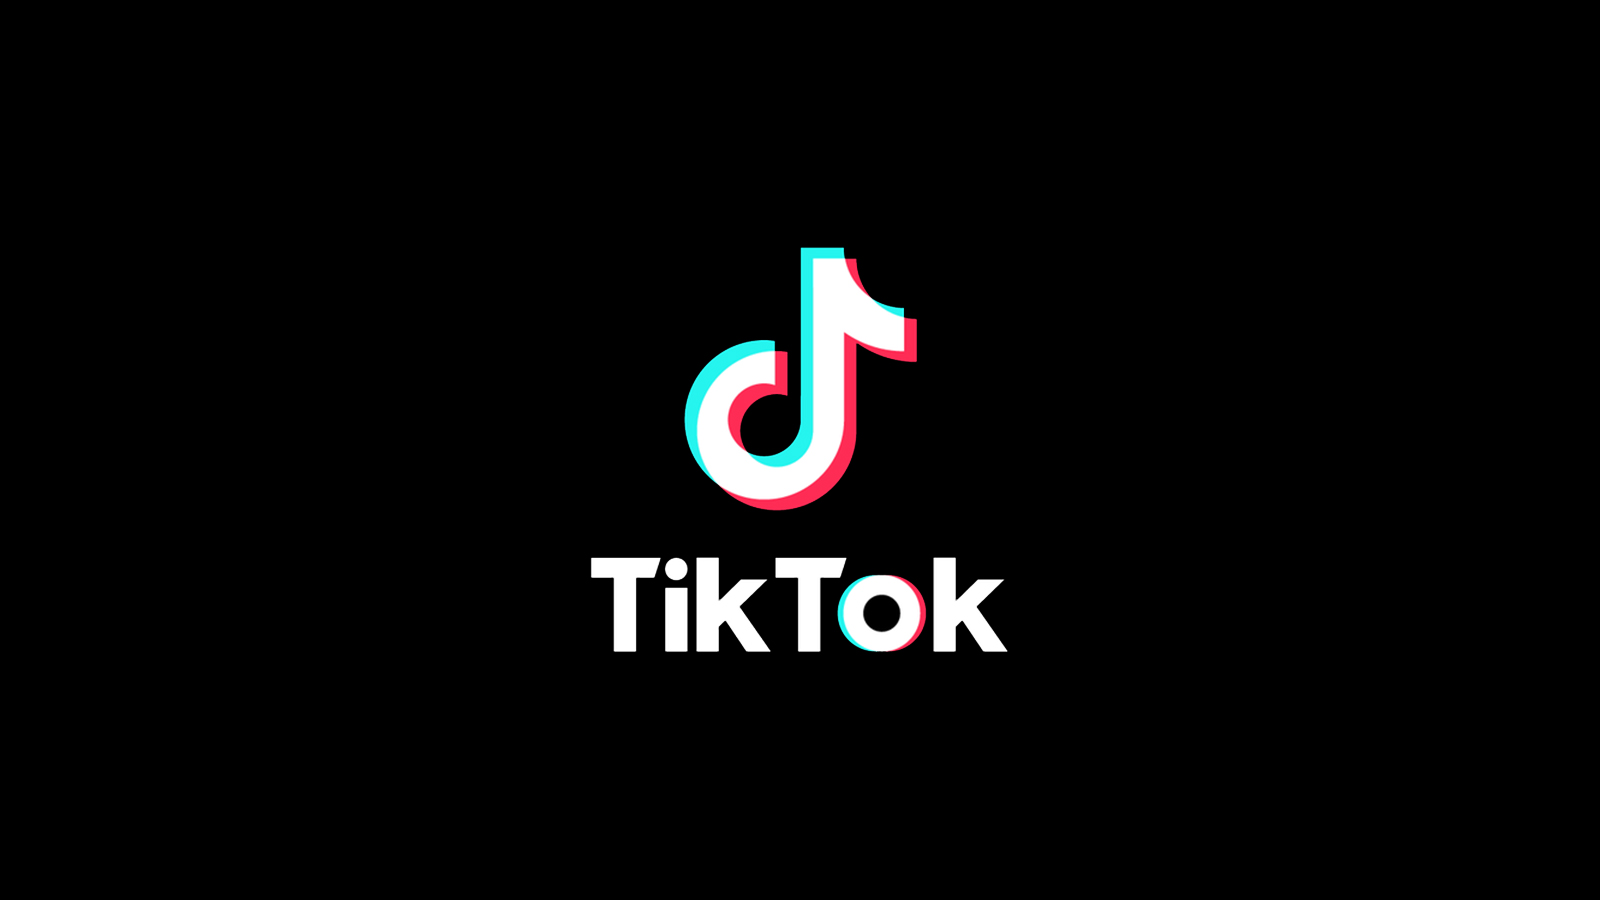 Il logo Tiktok su uno schermo nero